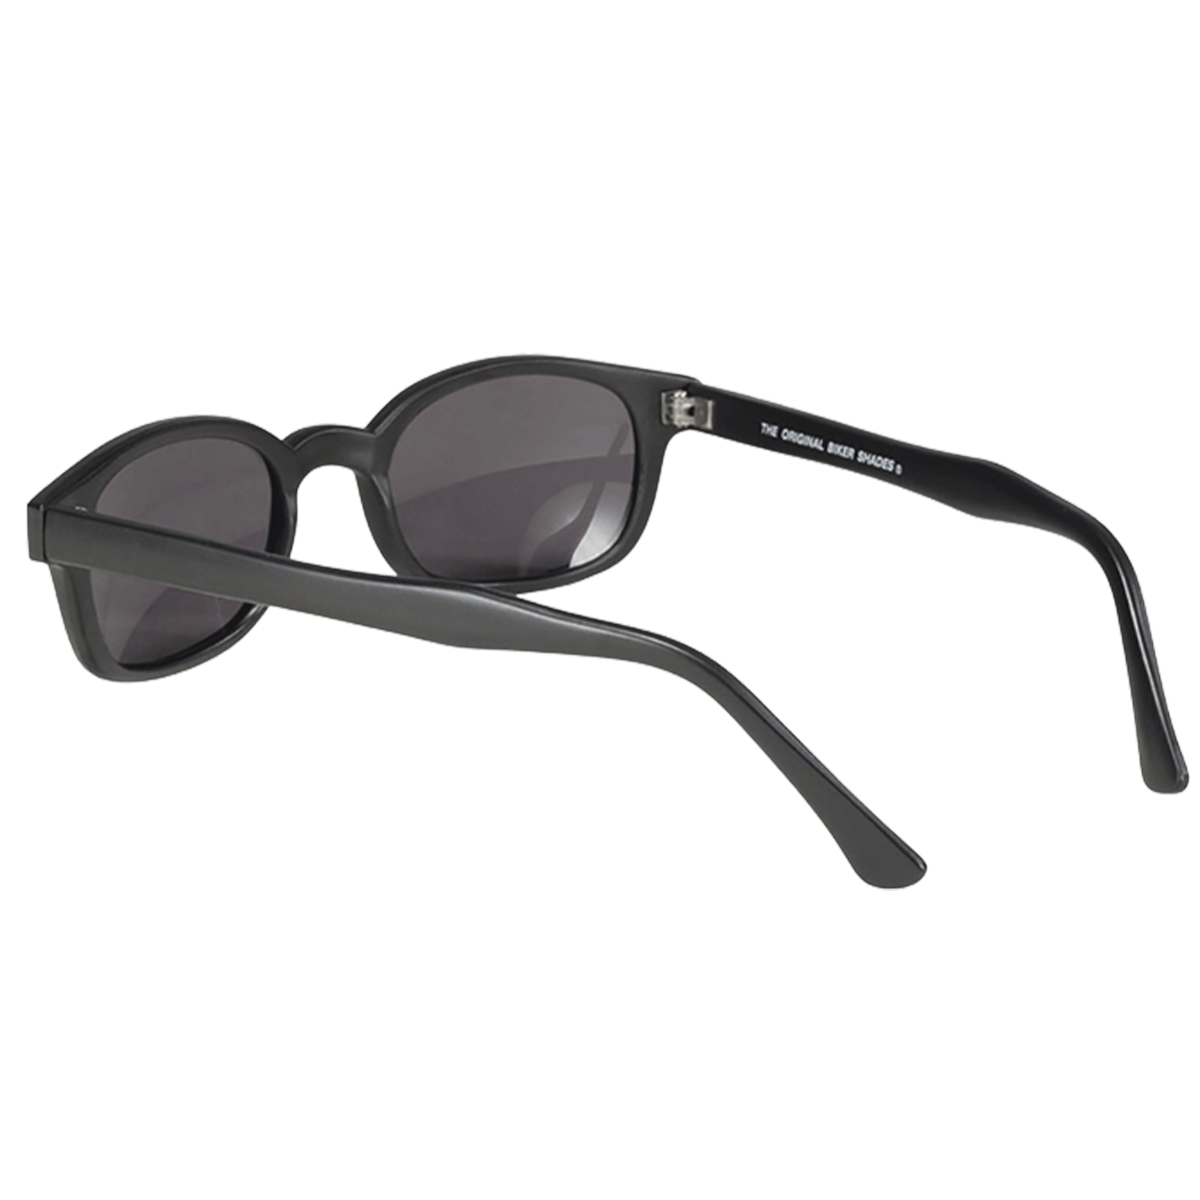 Sunglasses KD's 20010 - Smoked lenses - Matte black frame